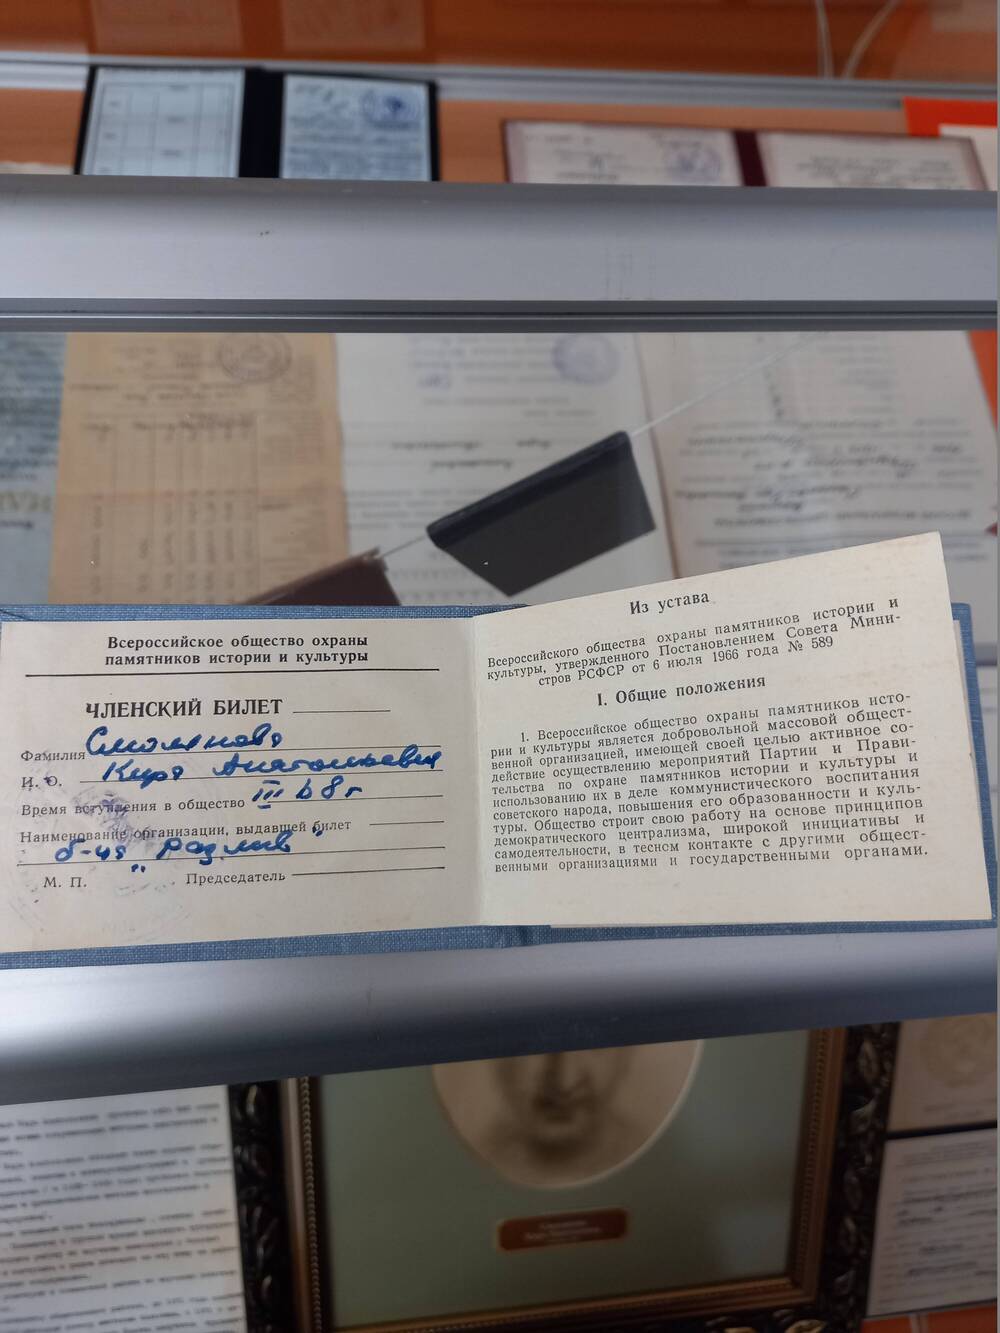 Членский билет Смоляной К.А. от организации Всероссийского общества охраны памятников истории и культуры, от 1968г.